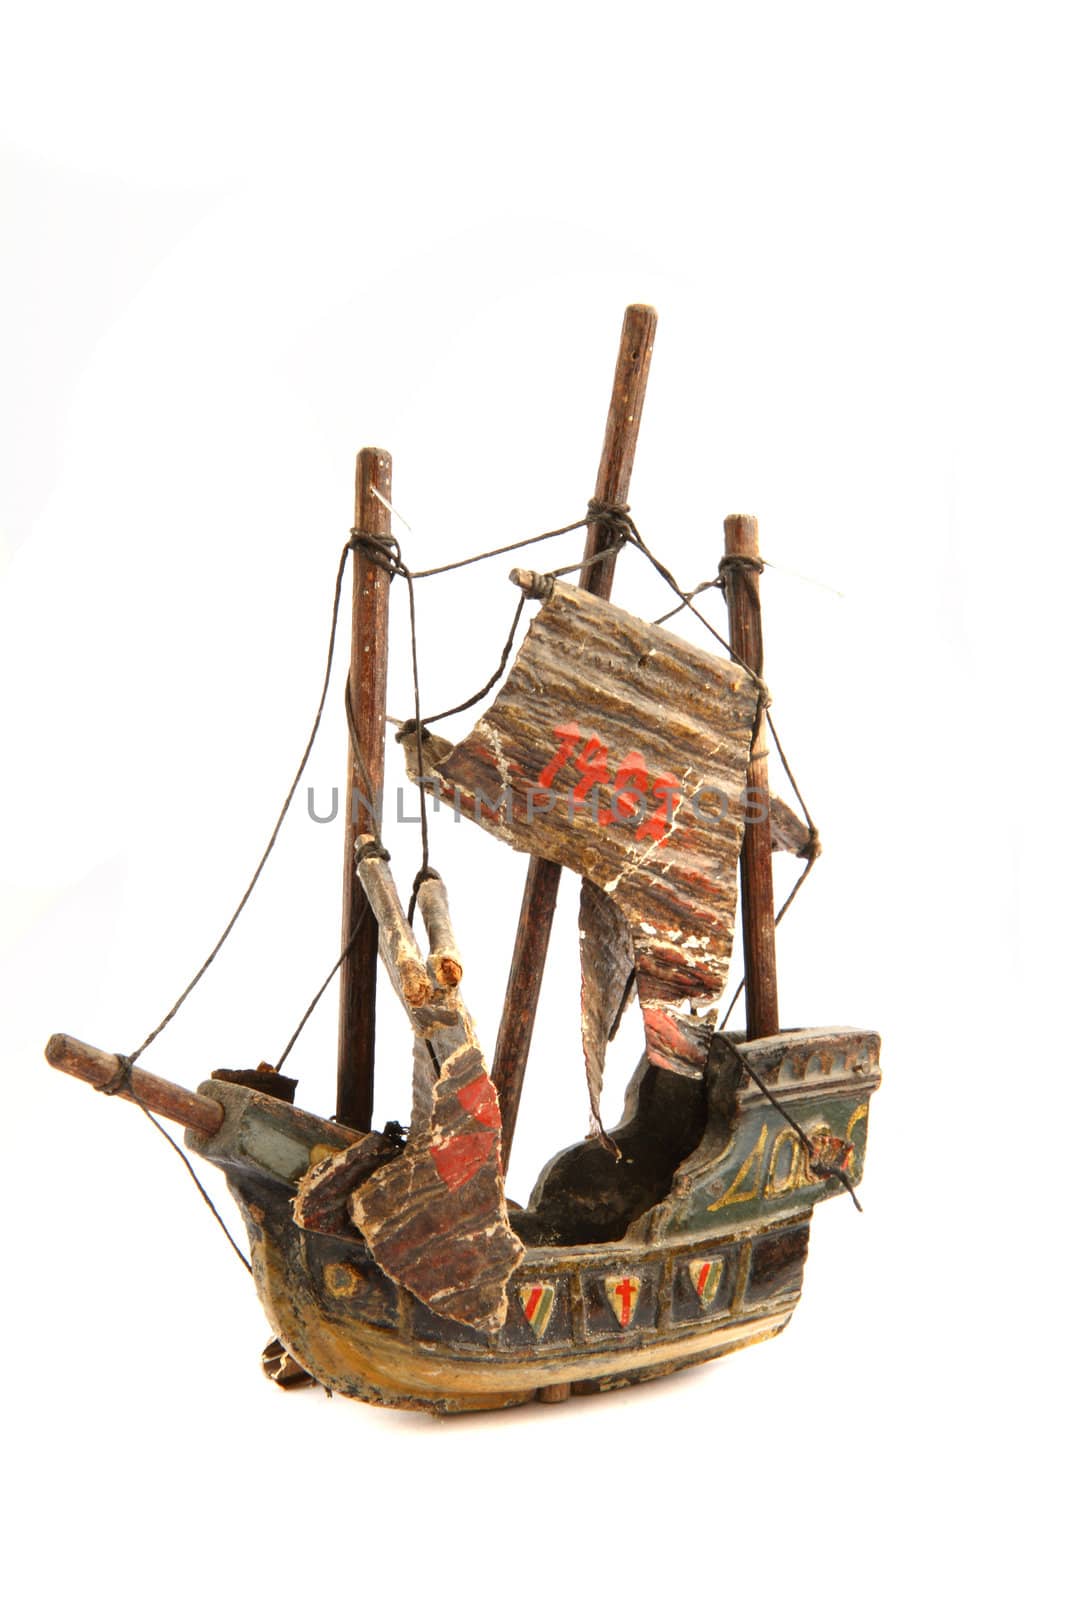 old ship model from 1492 by jonnysek